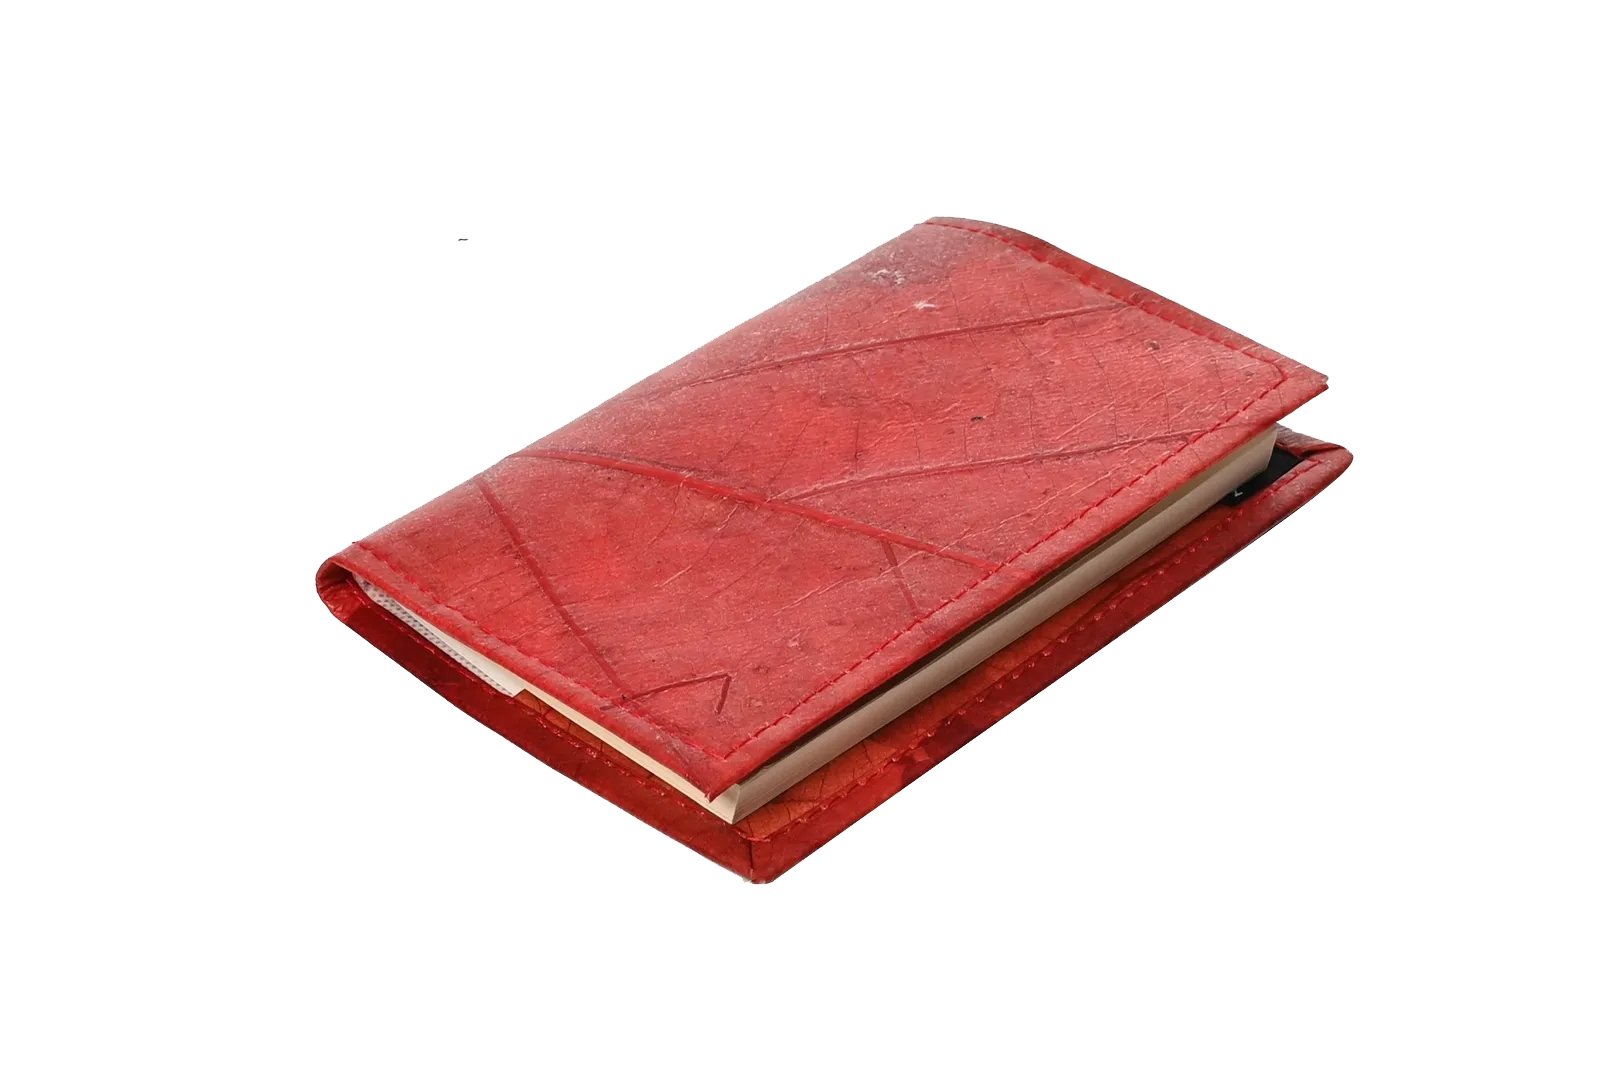 A6 Red Notebook/Journal-Karuna Dawn-stride